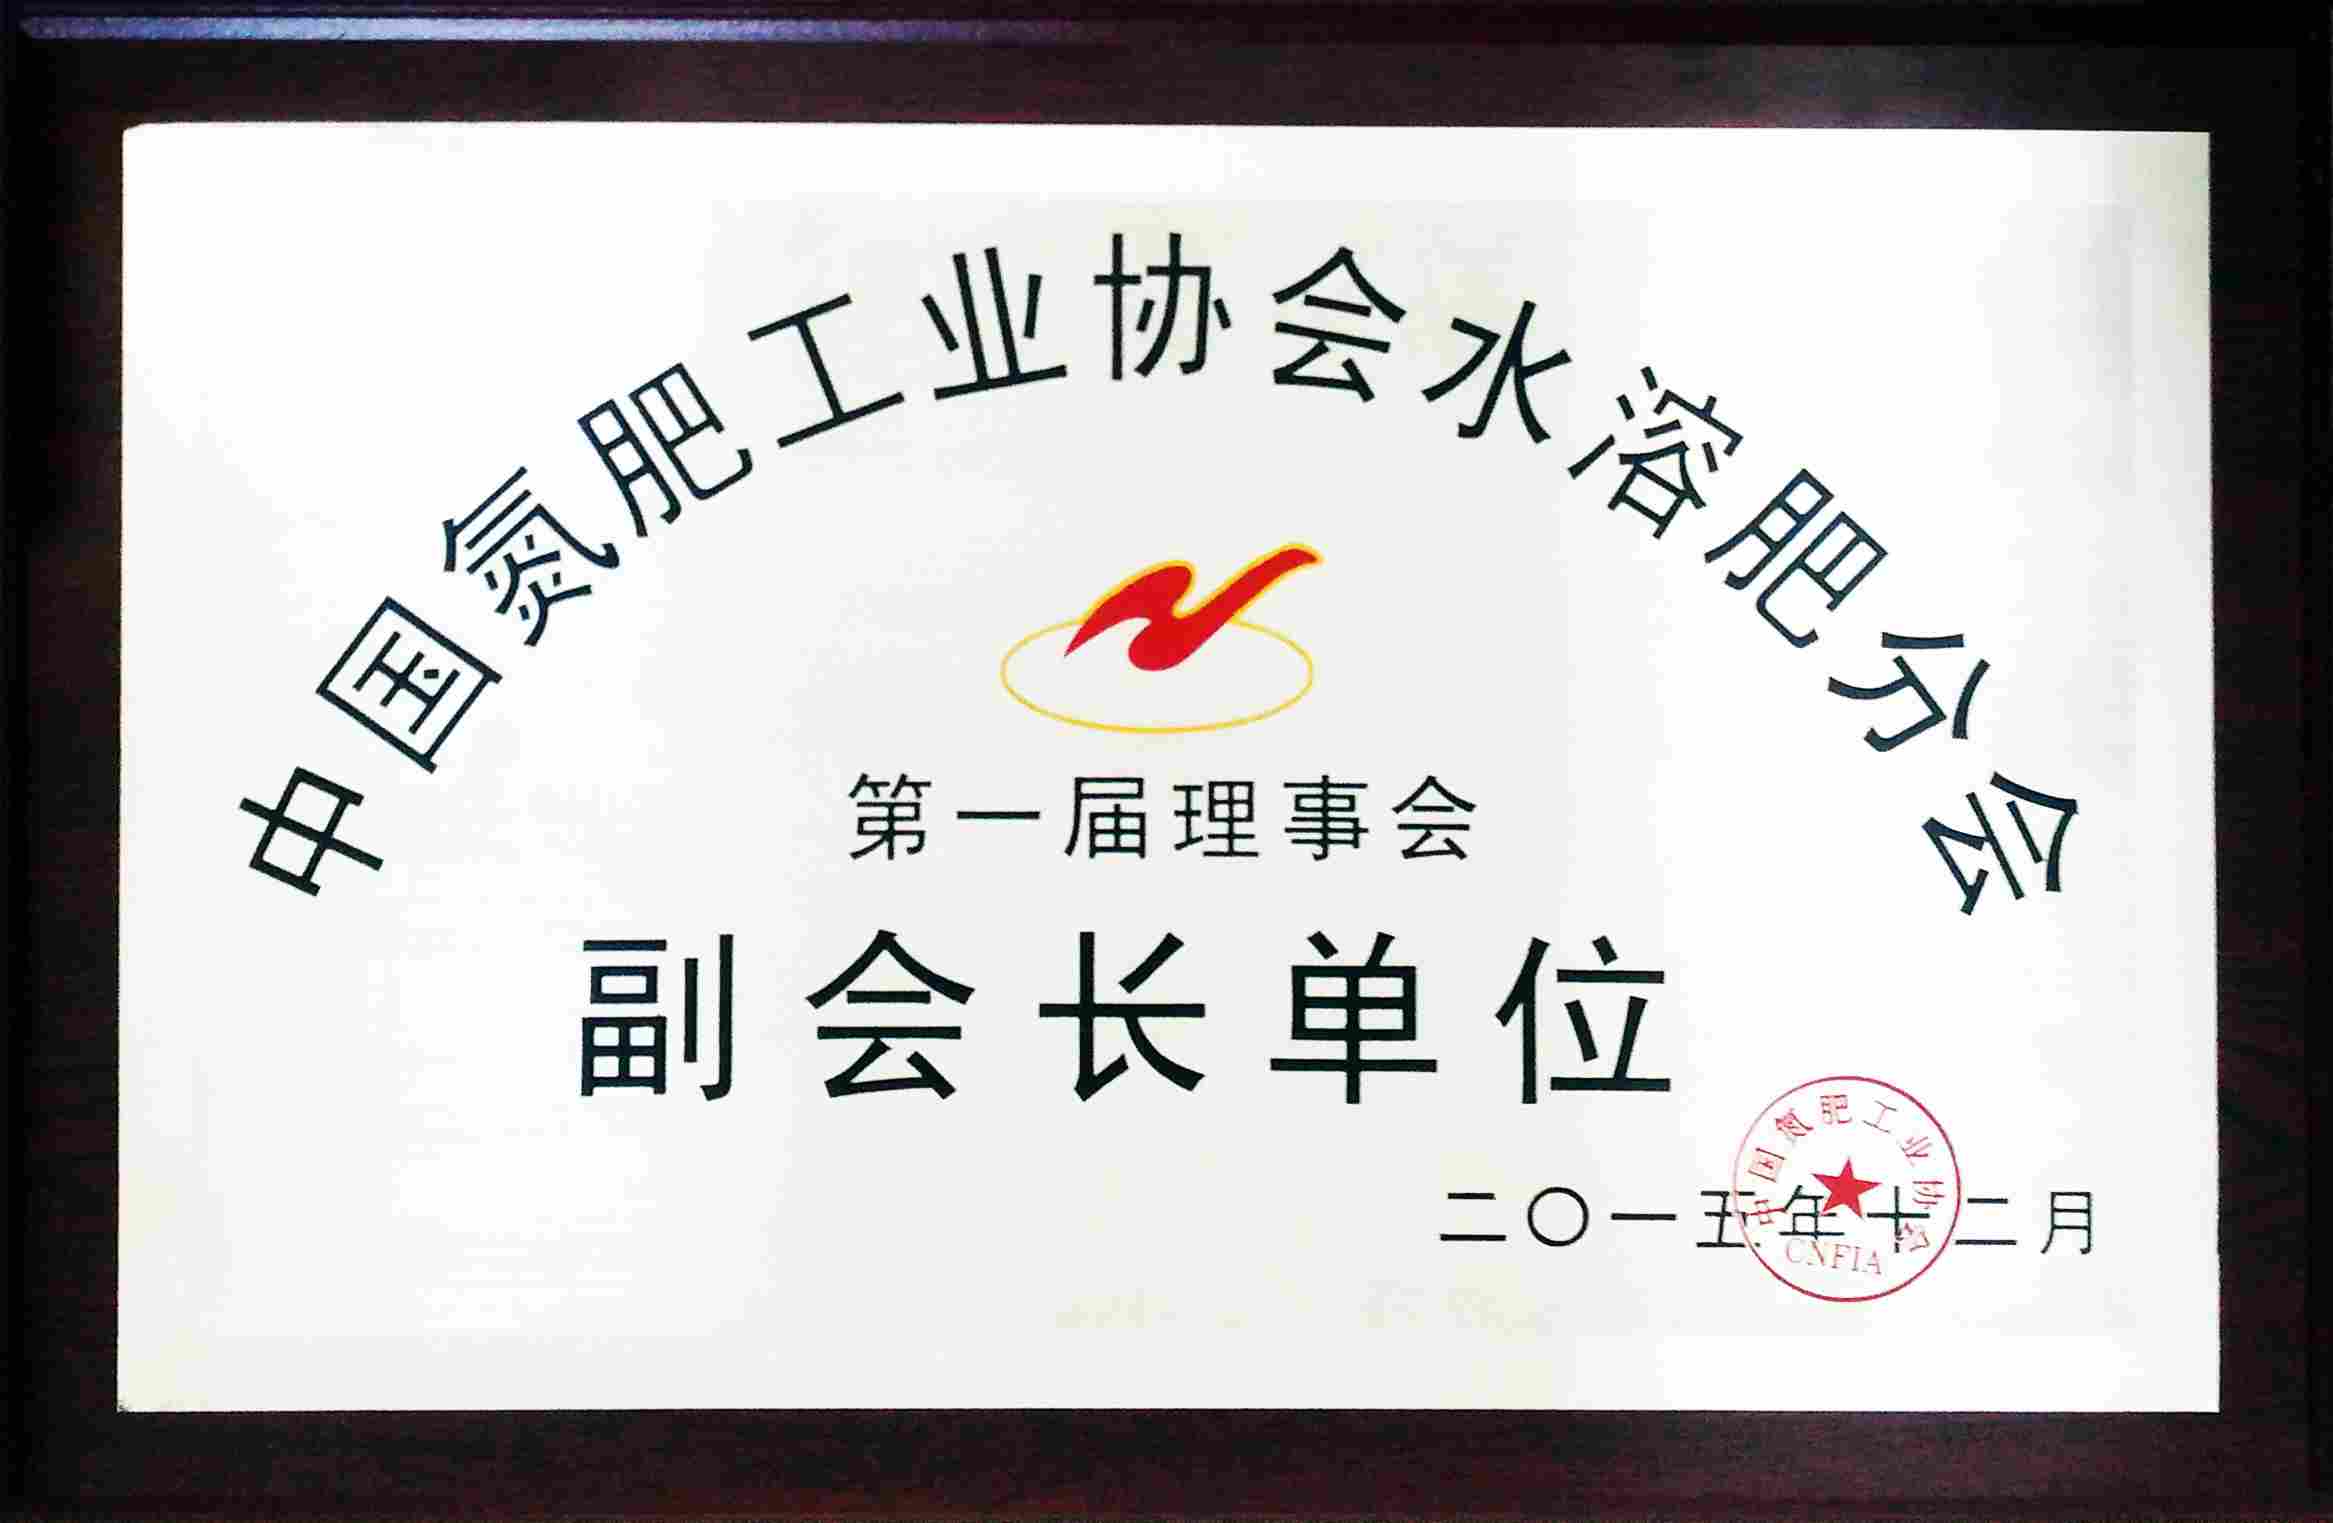 2015年12月中國氮肥工業協會水溶肥分會副會長單位